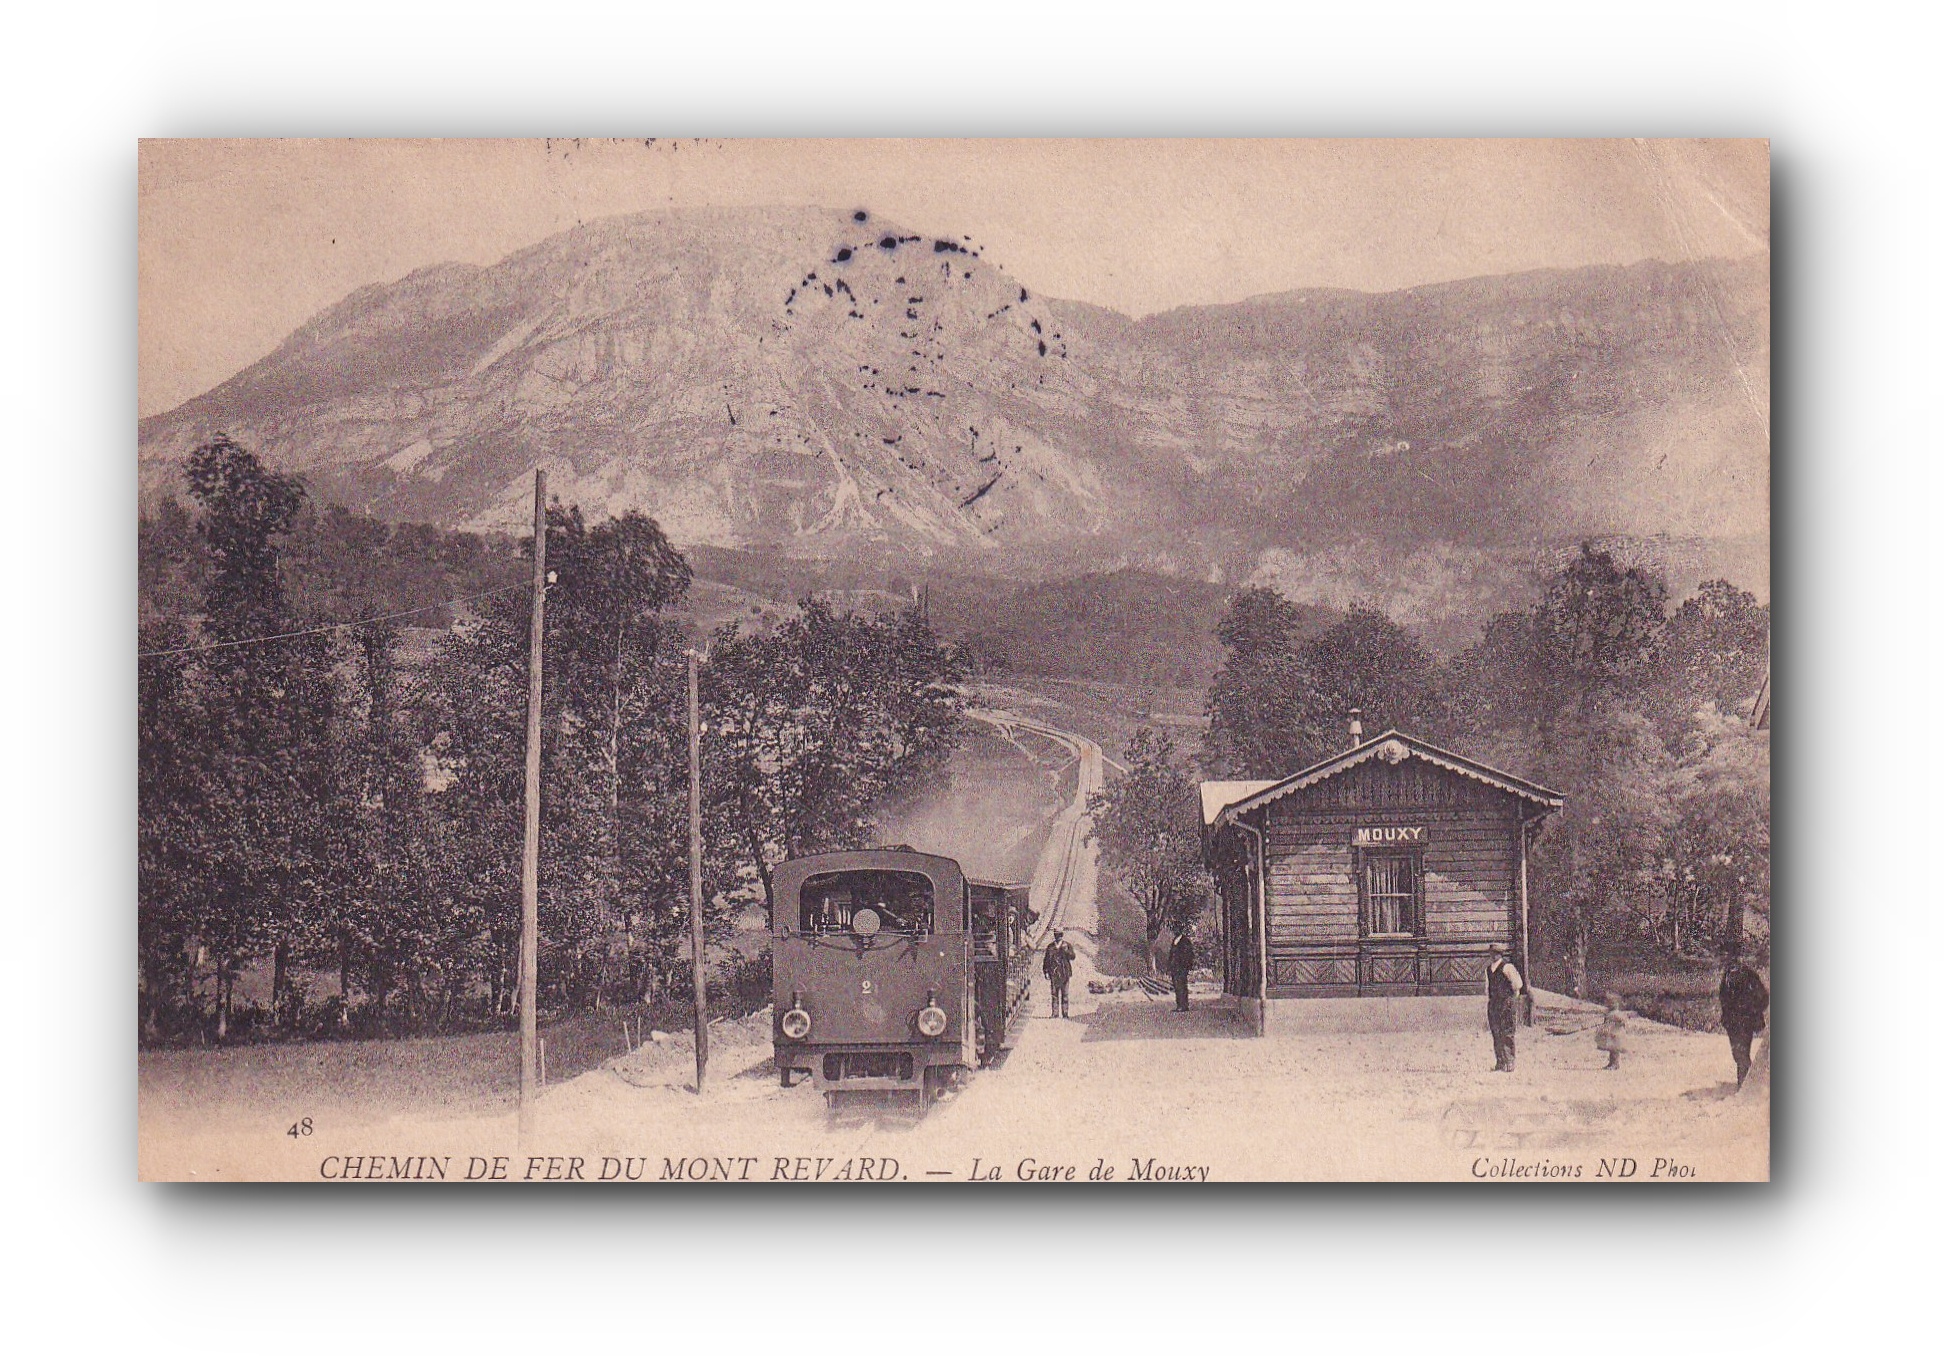 Chemin de fer du Mont Revard - 25.04.1905 - Eisenbahn am Mont Revard - Mont Revard Railway